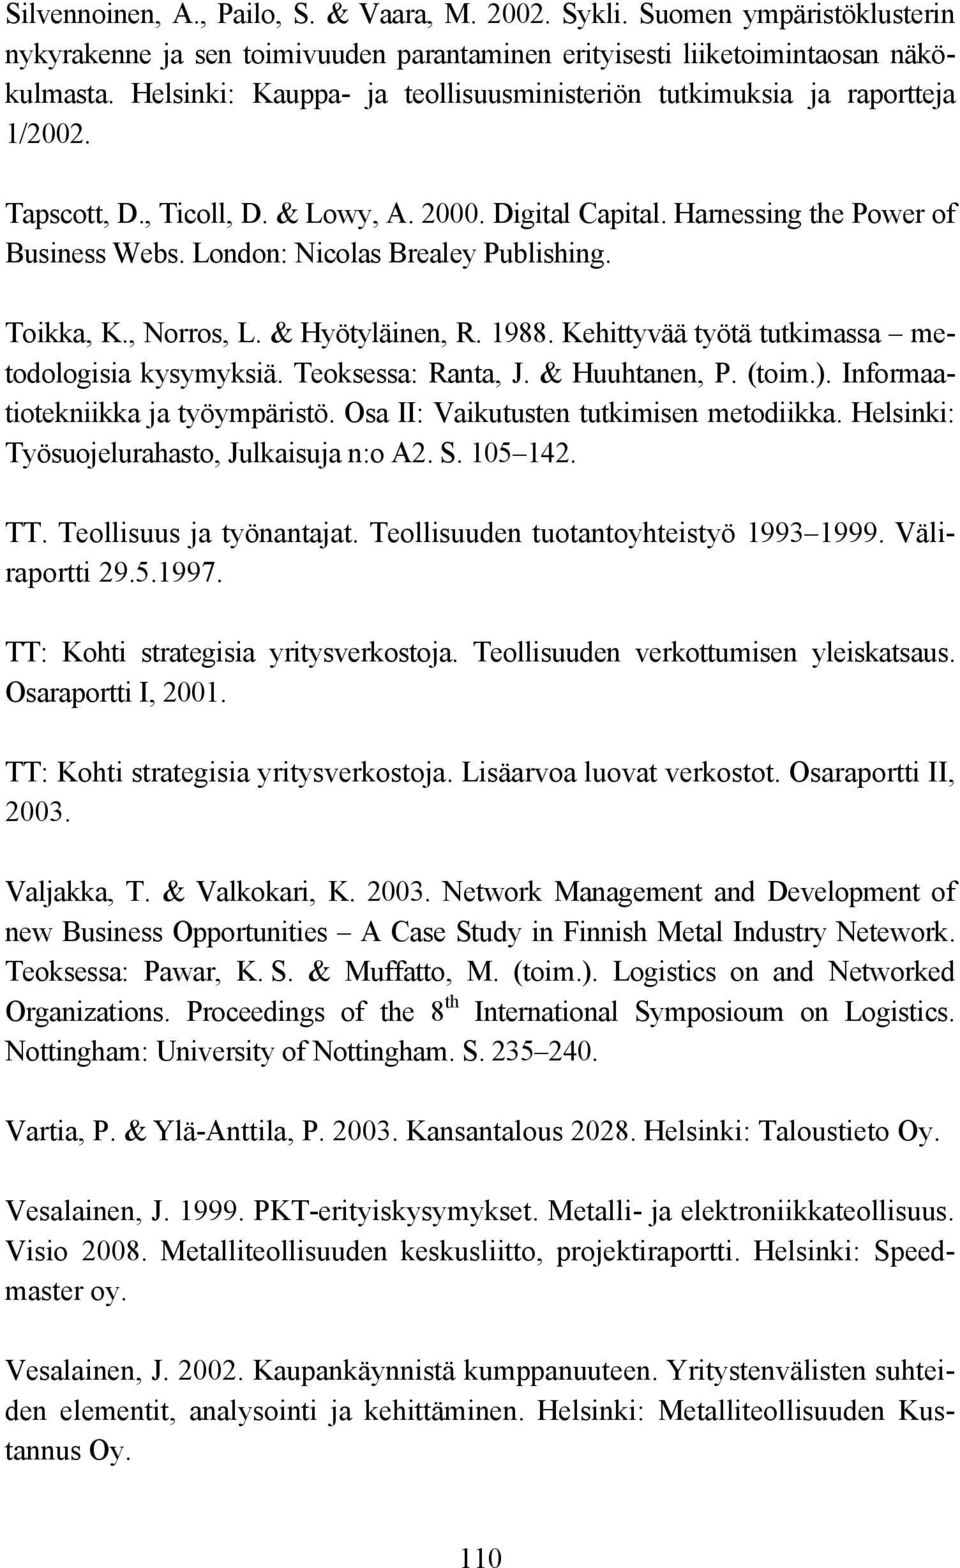 London: Nicolas Brealey Publishing. Toikka, K., Norros, L. & Hyötyläinen, R. 1988. Kehittyvää työtä tutkimassa metodologisia kysymyksiä. Teoksessa: Ranta, J. & Huuhtanen, P. (toim.).